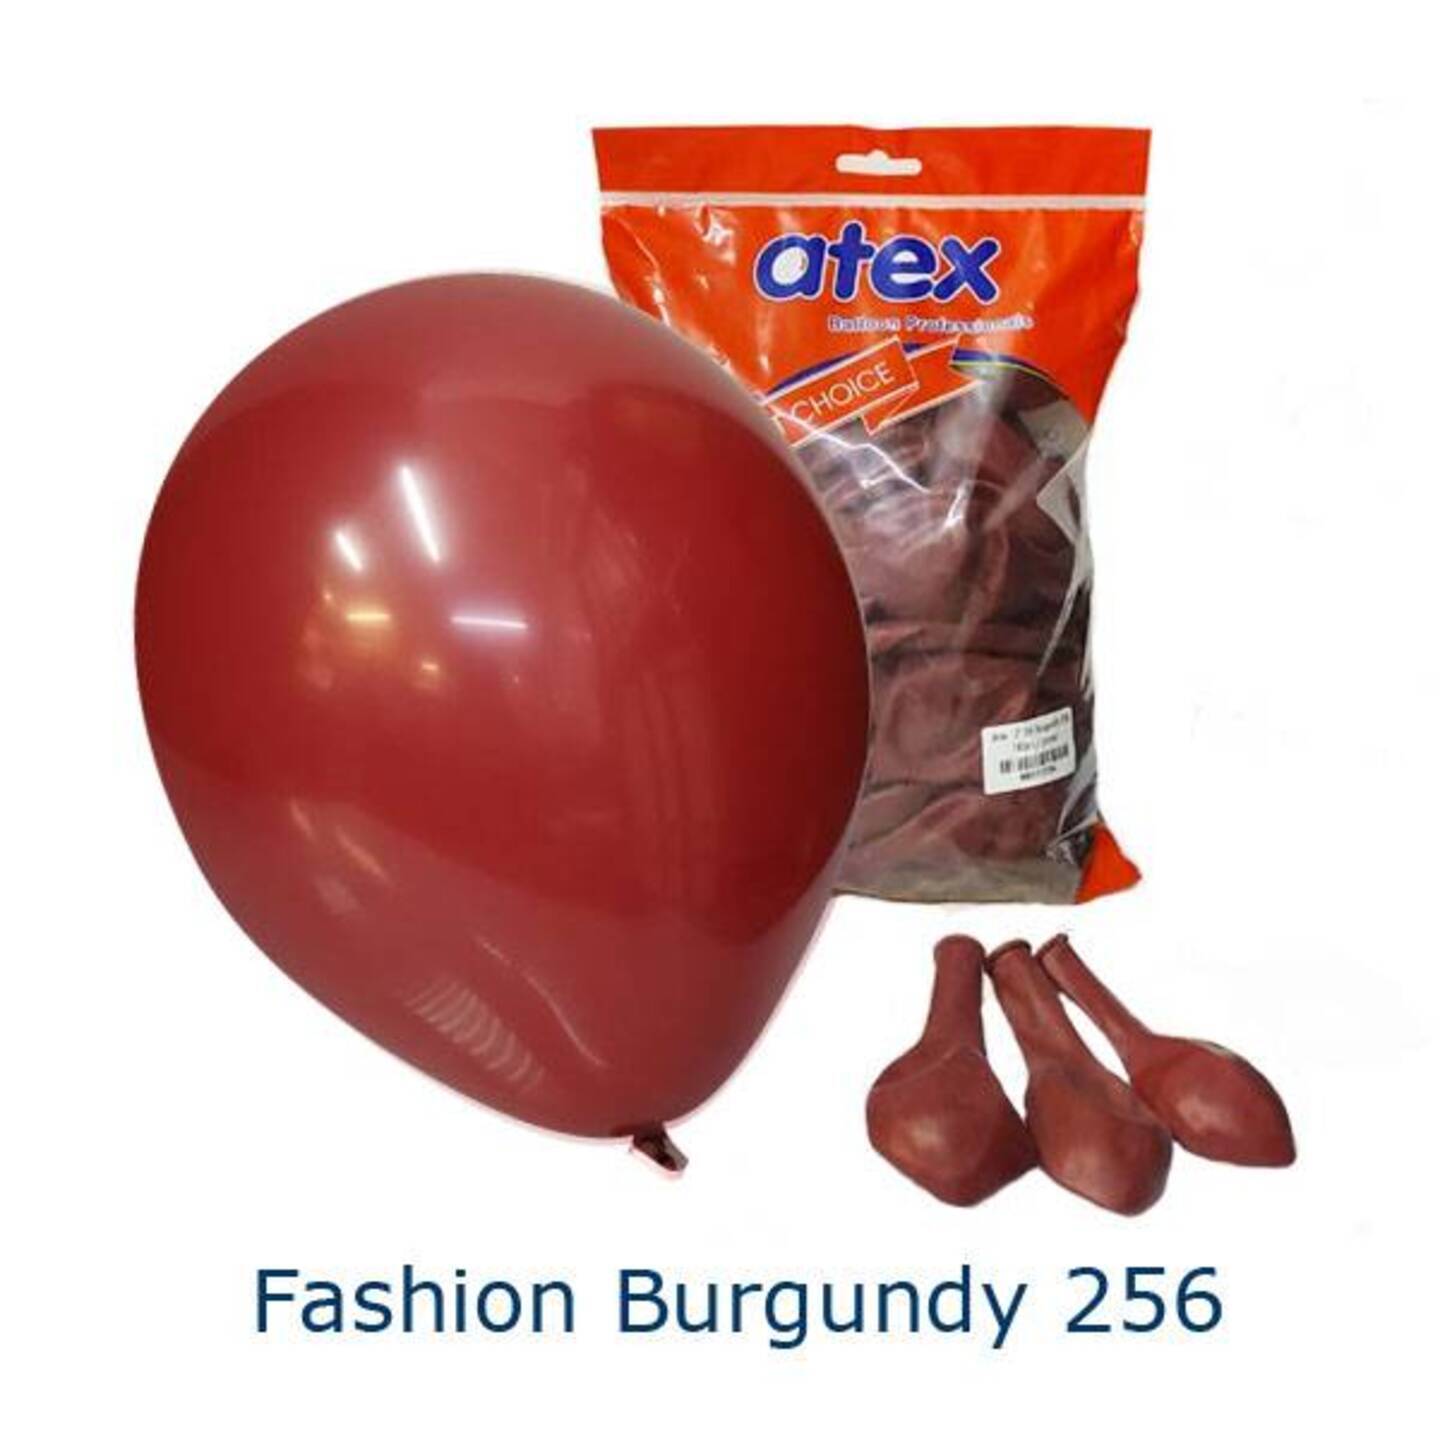 Fashion Burgundy 256